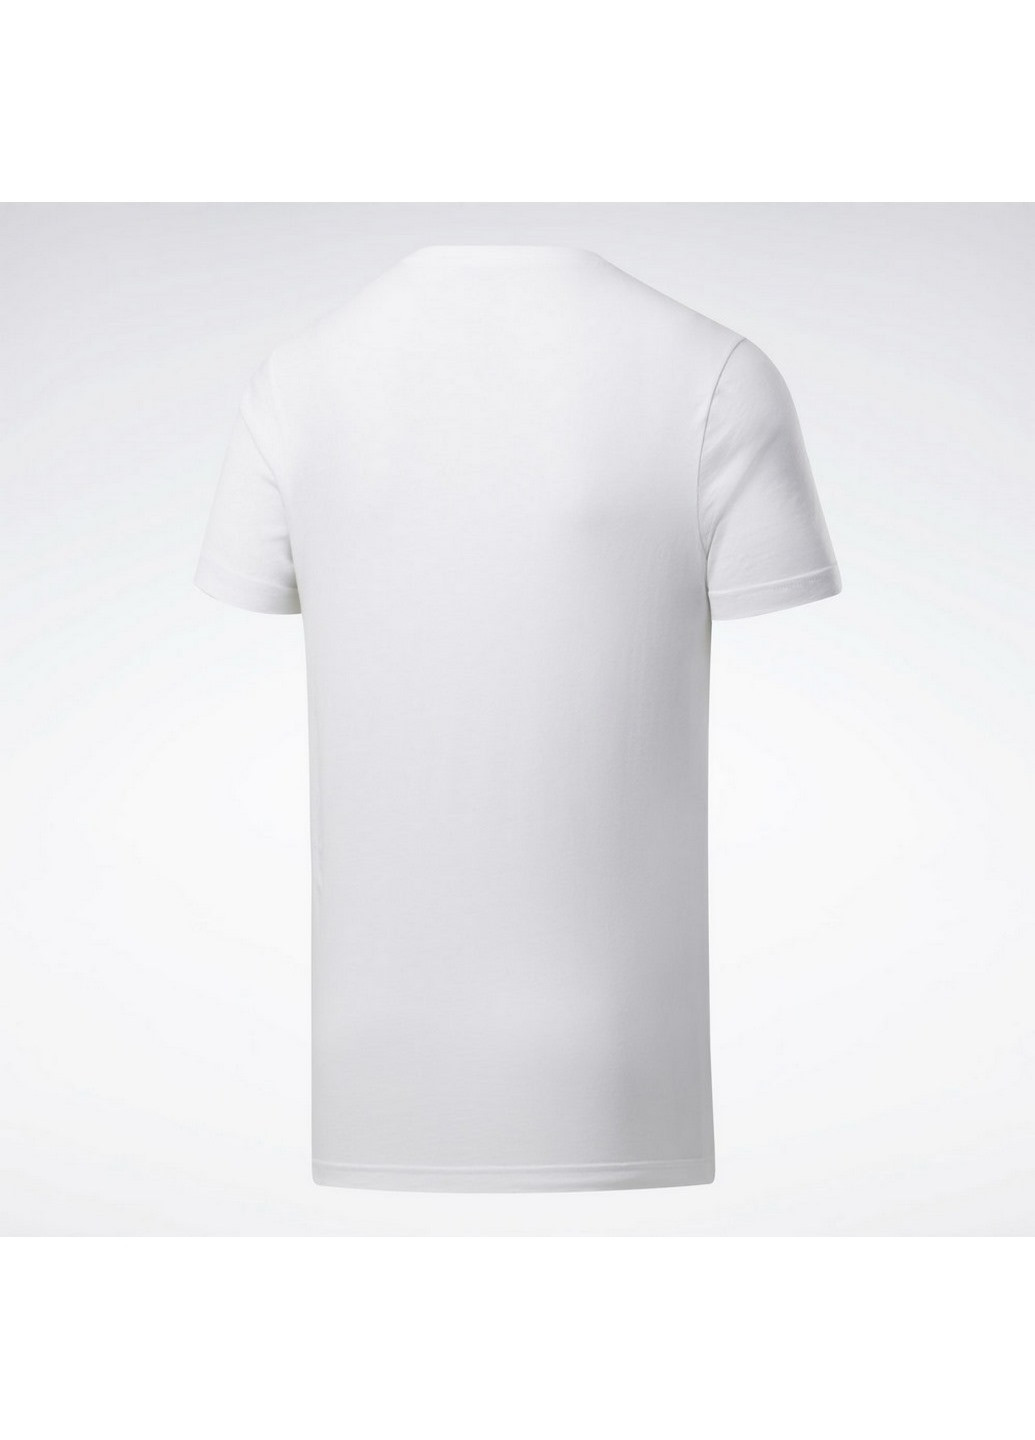 Біла футболка чоловіча gs linear re white fp9163 Reebok